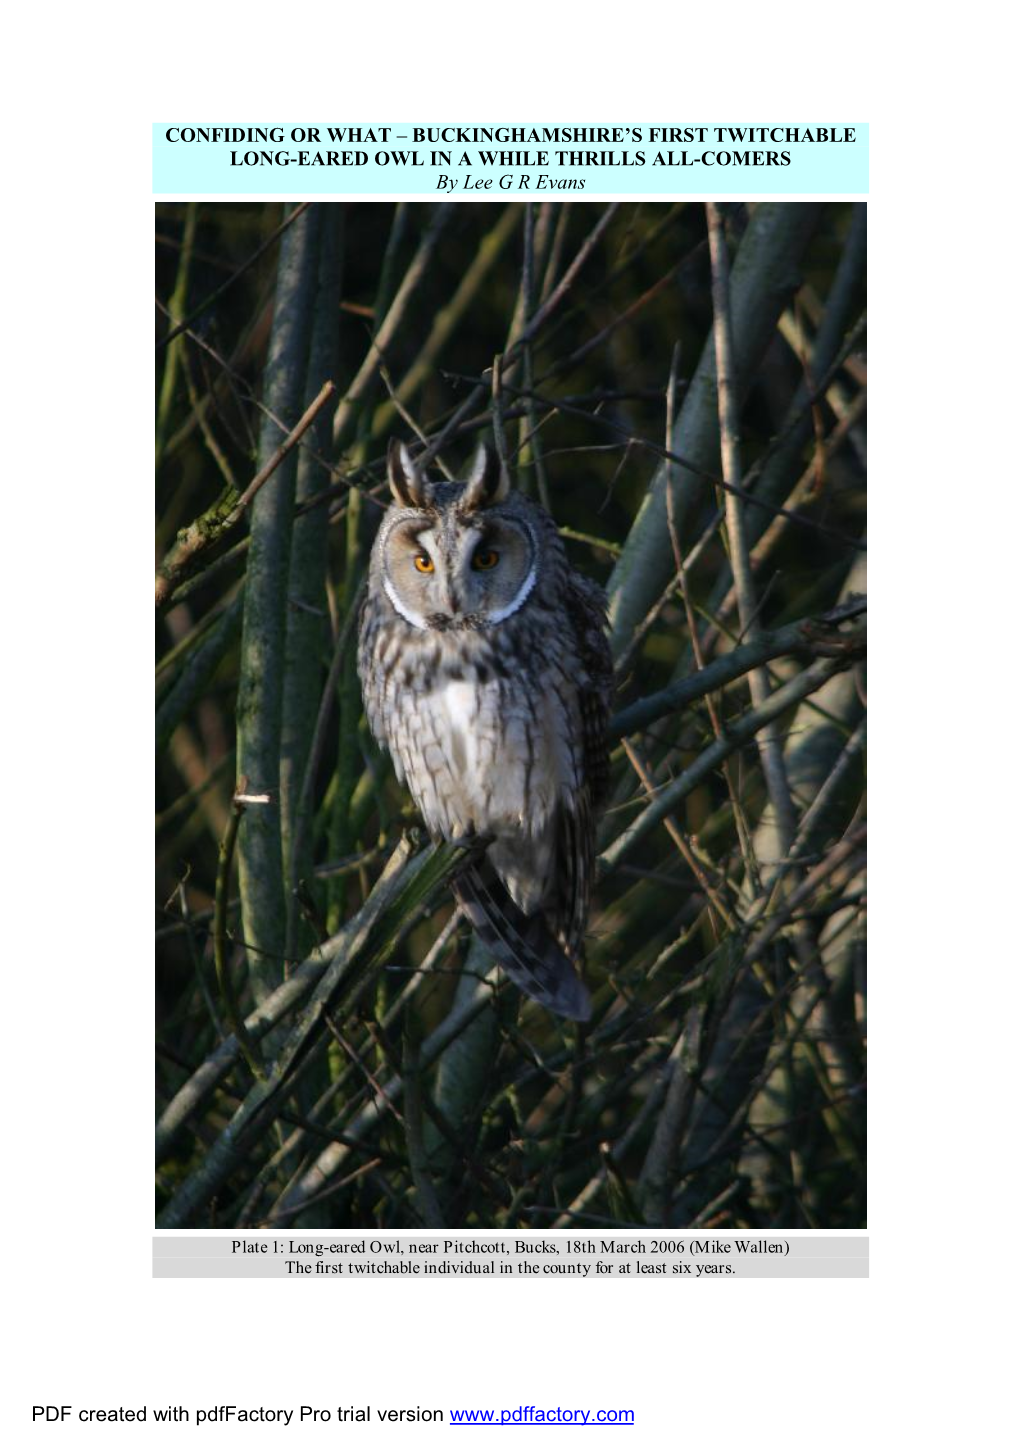 Long-Eared Owls in Bucks